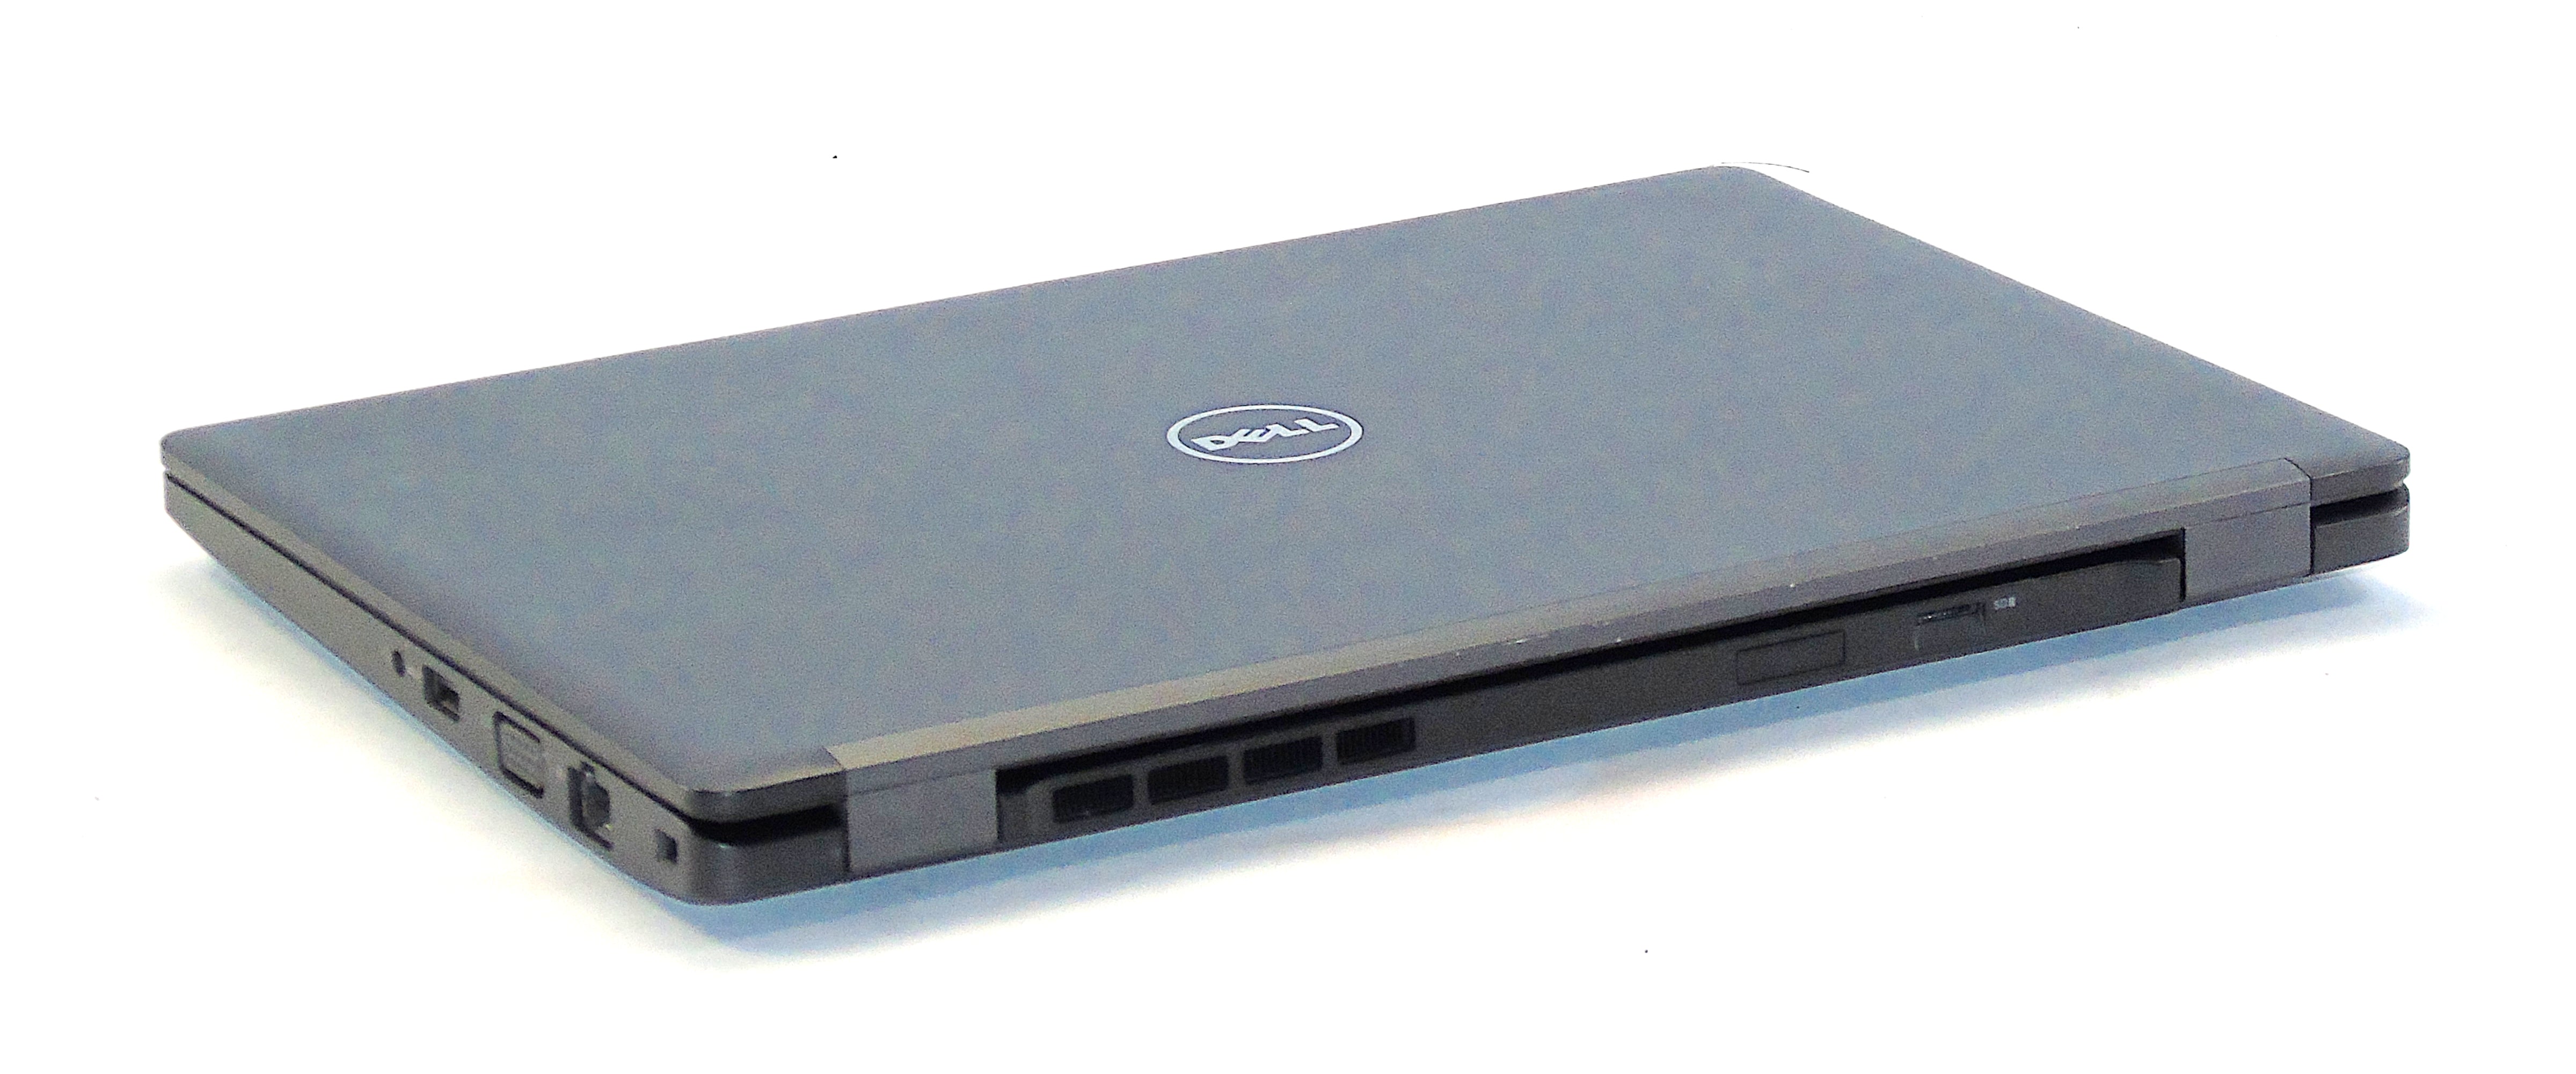 Dell Latitude 5280 Laptop, 12.5" Core i7 7th Gen, 8GB RAM, 256GB SSD